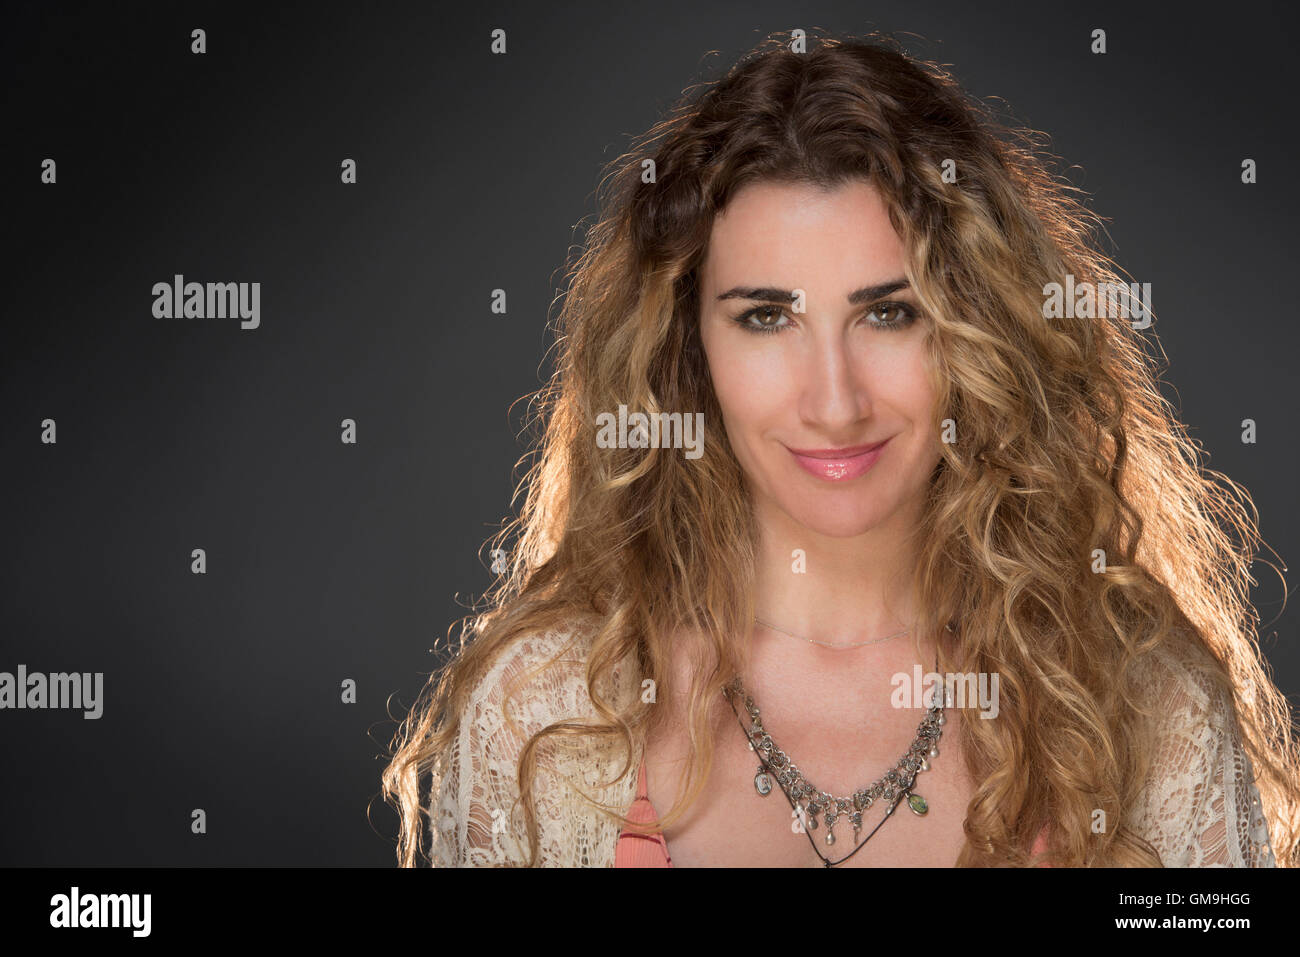 Ritratto di bella donna con lunghi capelli biondi Foto Stock